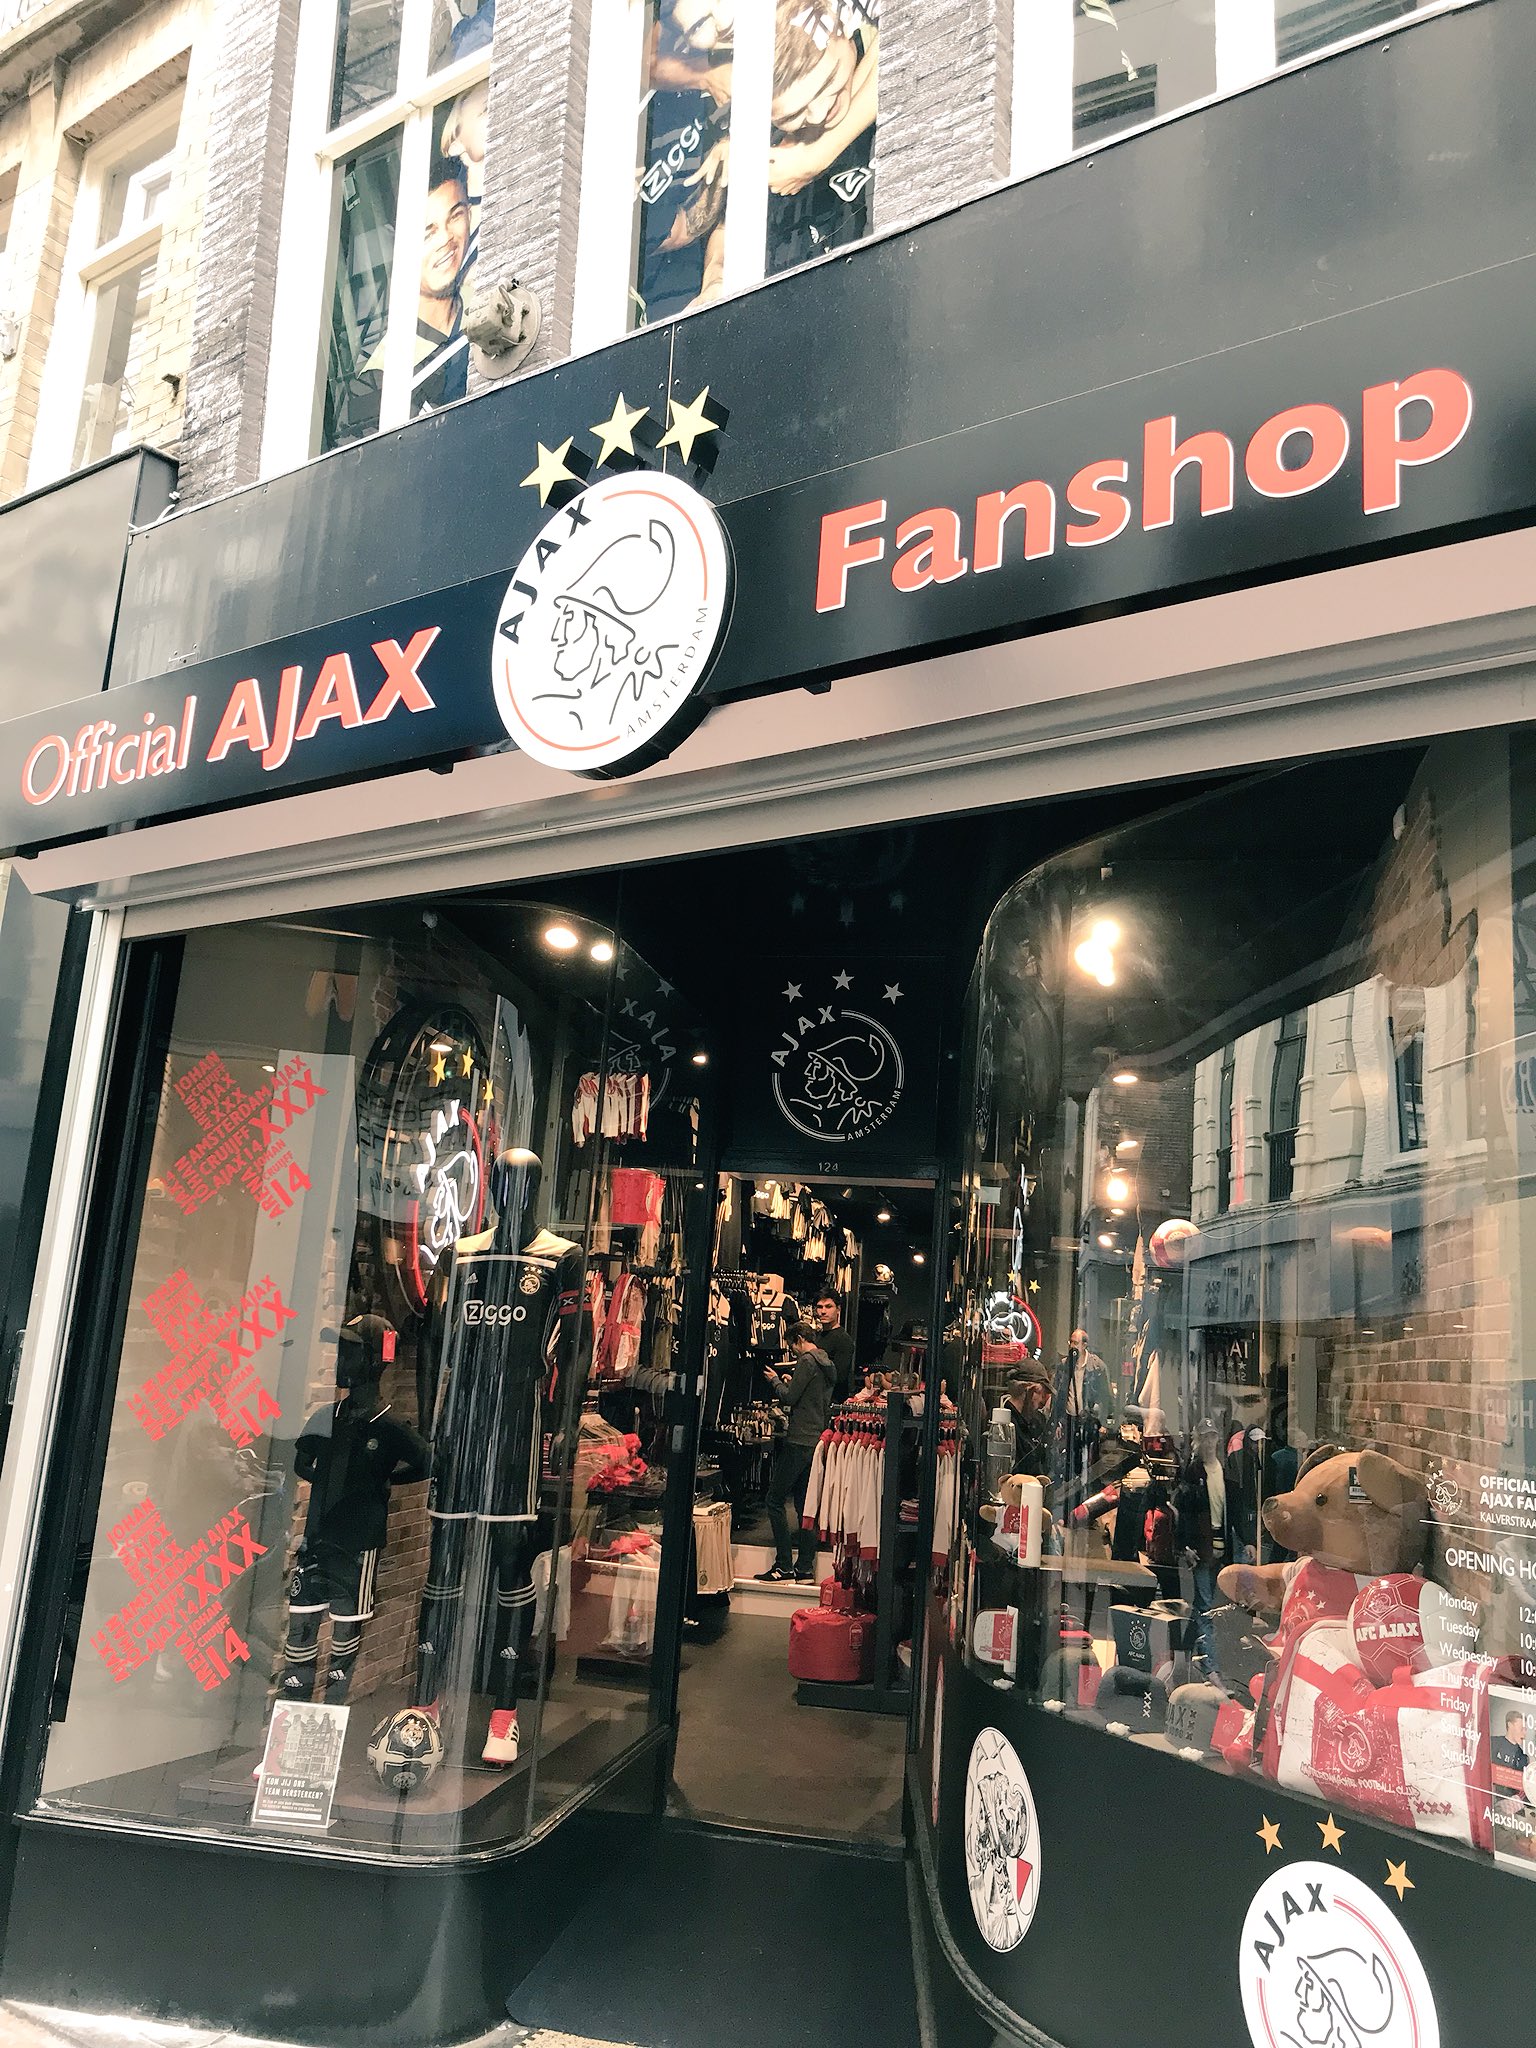 onwettig vingerafdruk Kruiden Frank Balvers on Twitter: "Zondagmiddag door de Kalverstraat een bezoek  gebracht aan de mooie nieuwe official #Ajax Fanshop  https://t.co/DI9rz5ZDVk" / Twitter